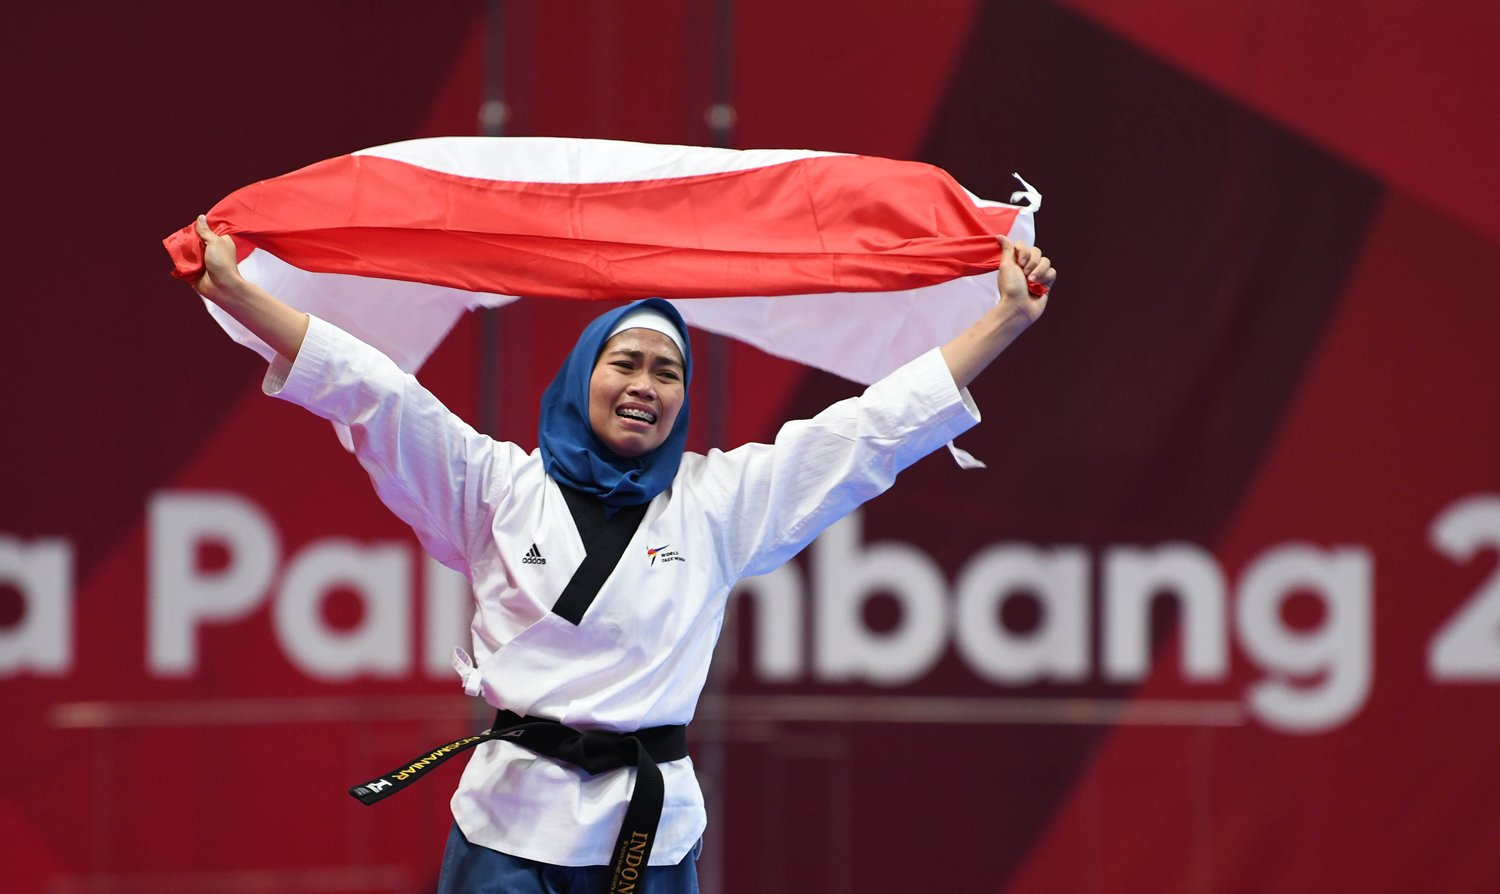 Atlet Taekwondo putri Indonesia Rosmaniar Defia berlari membawa bendera merah putih usai menang melawan Taekwondoin putri Iran Marjan Salahshouri pada partai final poomsae individu pada Asian Games 2018 di Jakarta Convention Center (JCC), Defia menang dan memperoleh medali emas untuk Indonesia. Minggu (19/8).